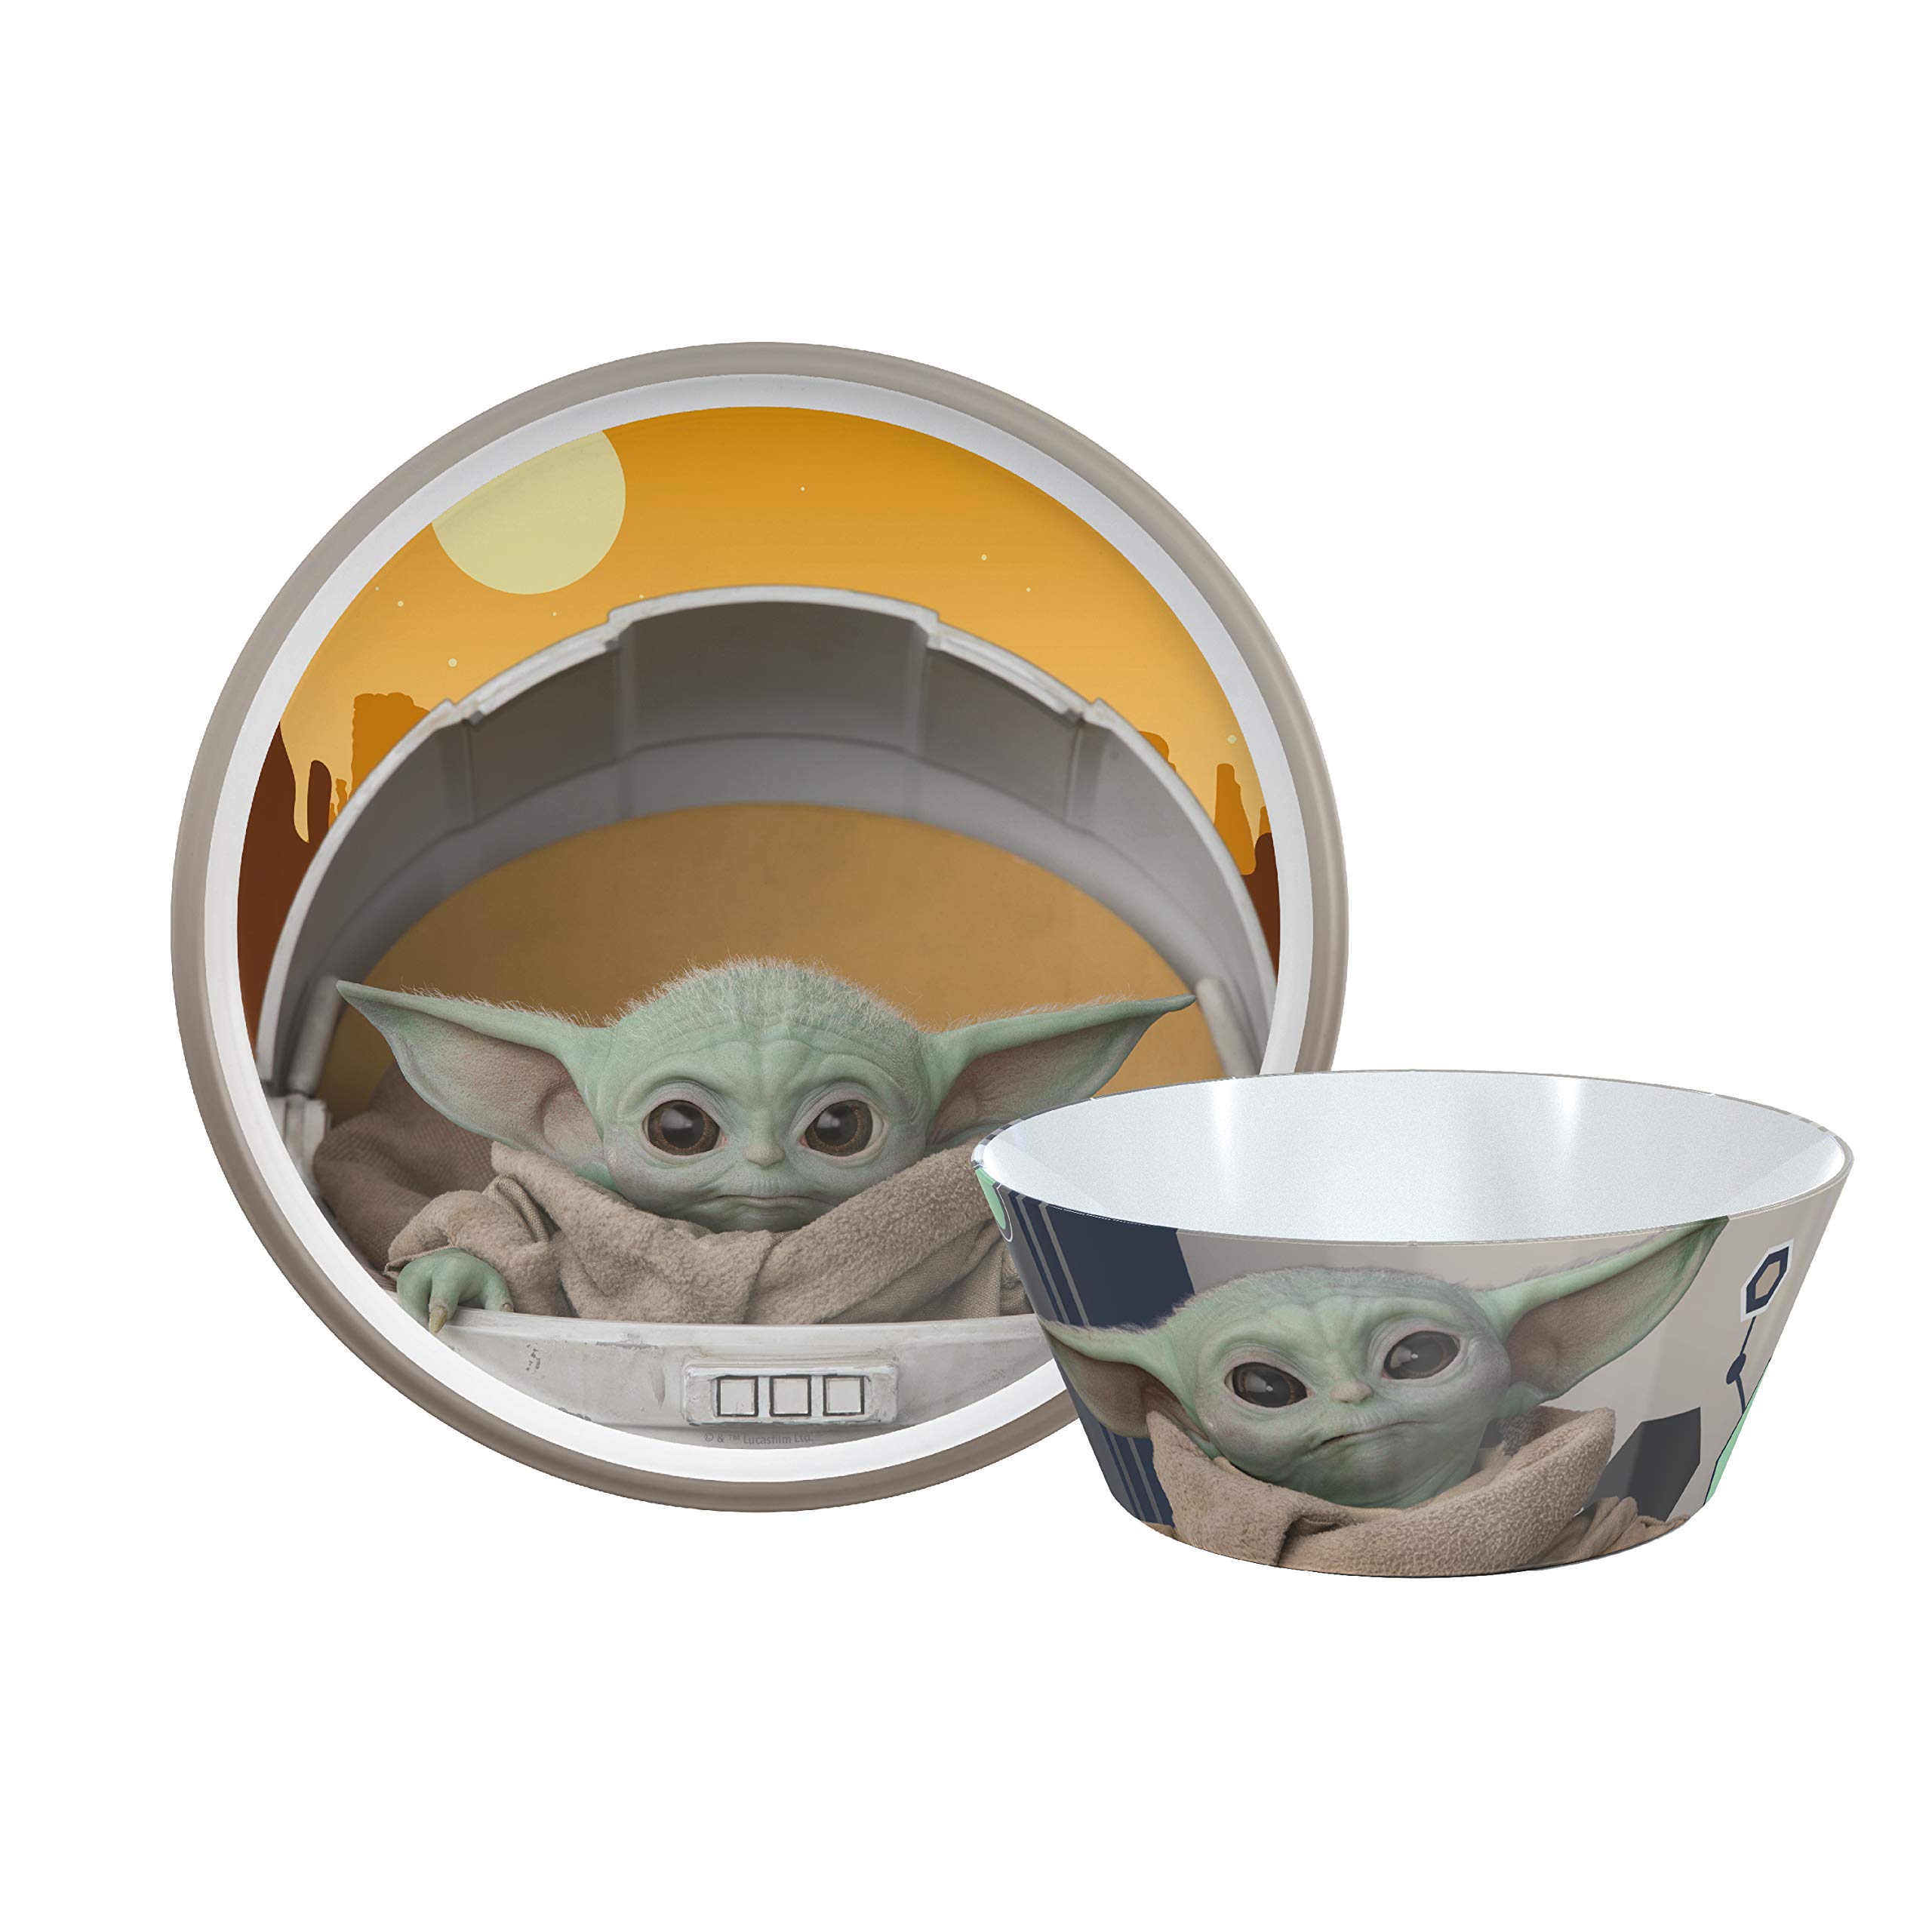 Zak Designs Star Wars Das Mandalorian Geschirr-Set beinhaltet Teller und Schale, aus strapazierfähigem Melamin und perfekt für Kinder (Baby Yoda, Grogu, 2-teiliges Set, BPA-frei)